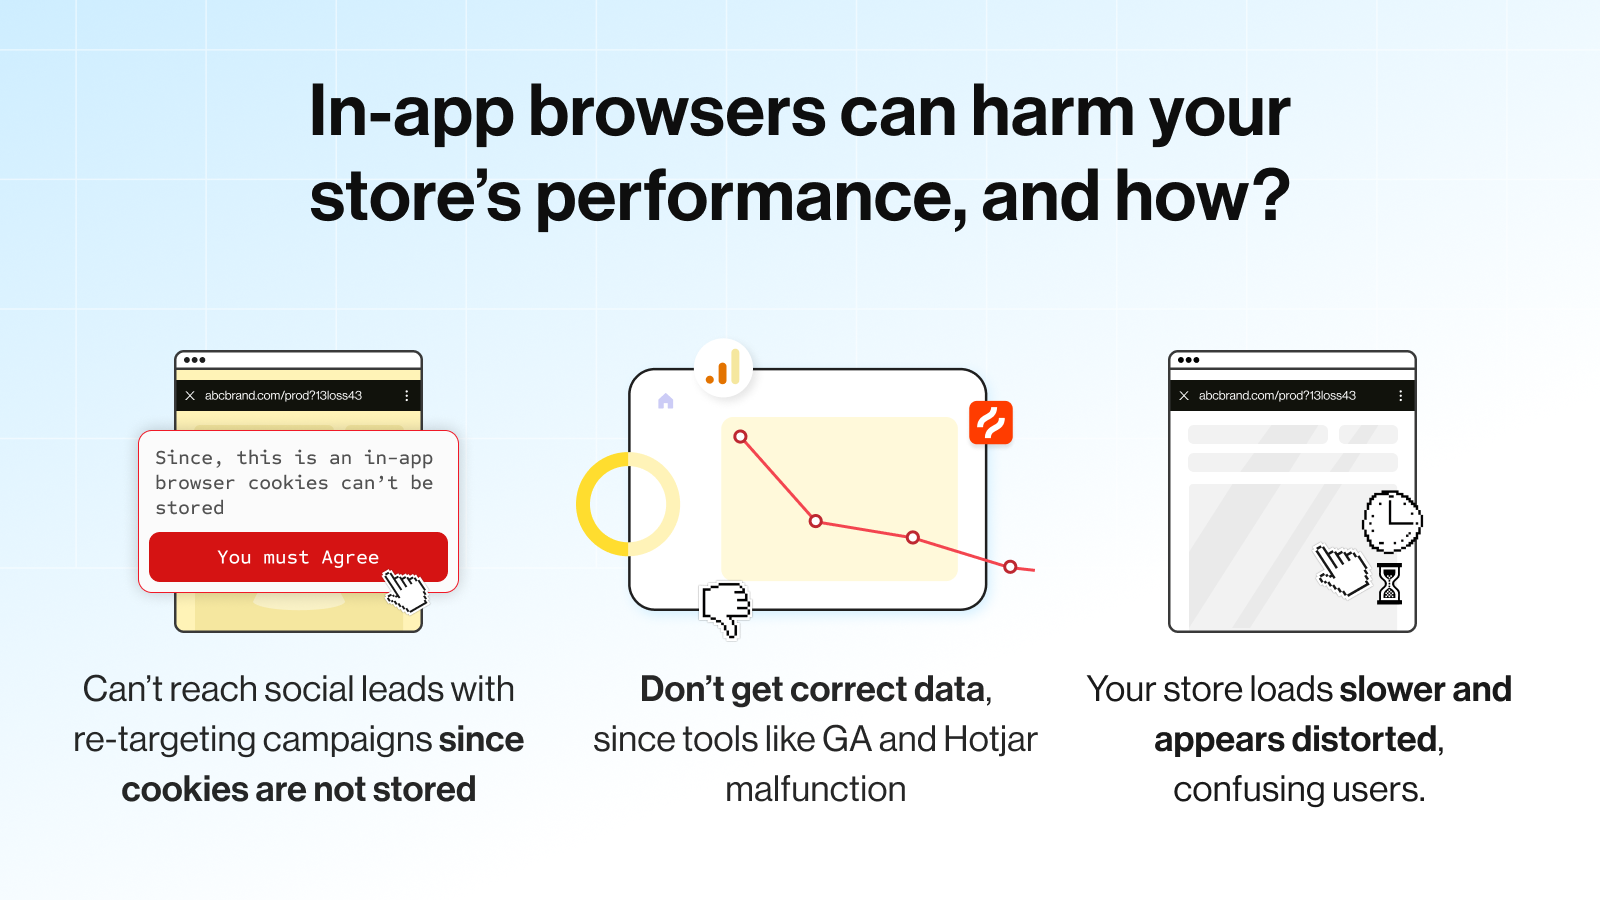 ¿Cómo los navegadores en la aplicación perjudican el rendimiento de tu tienda?